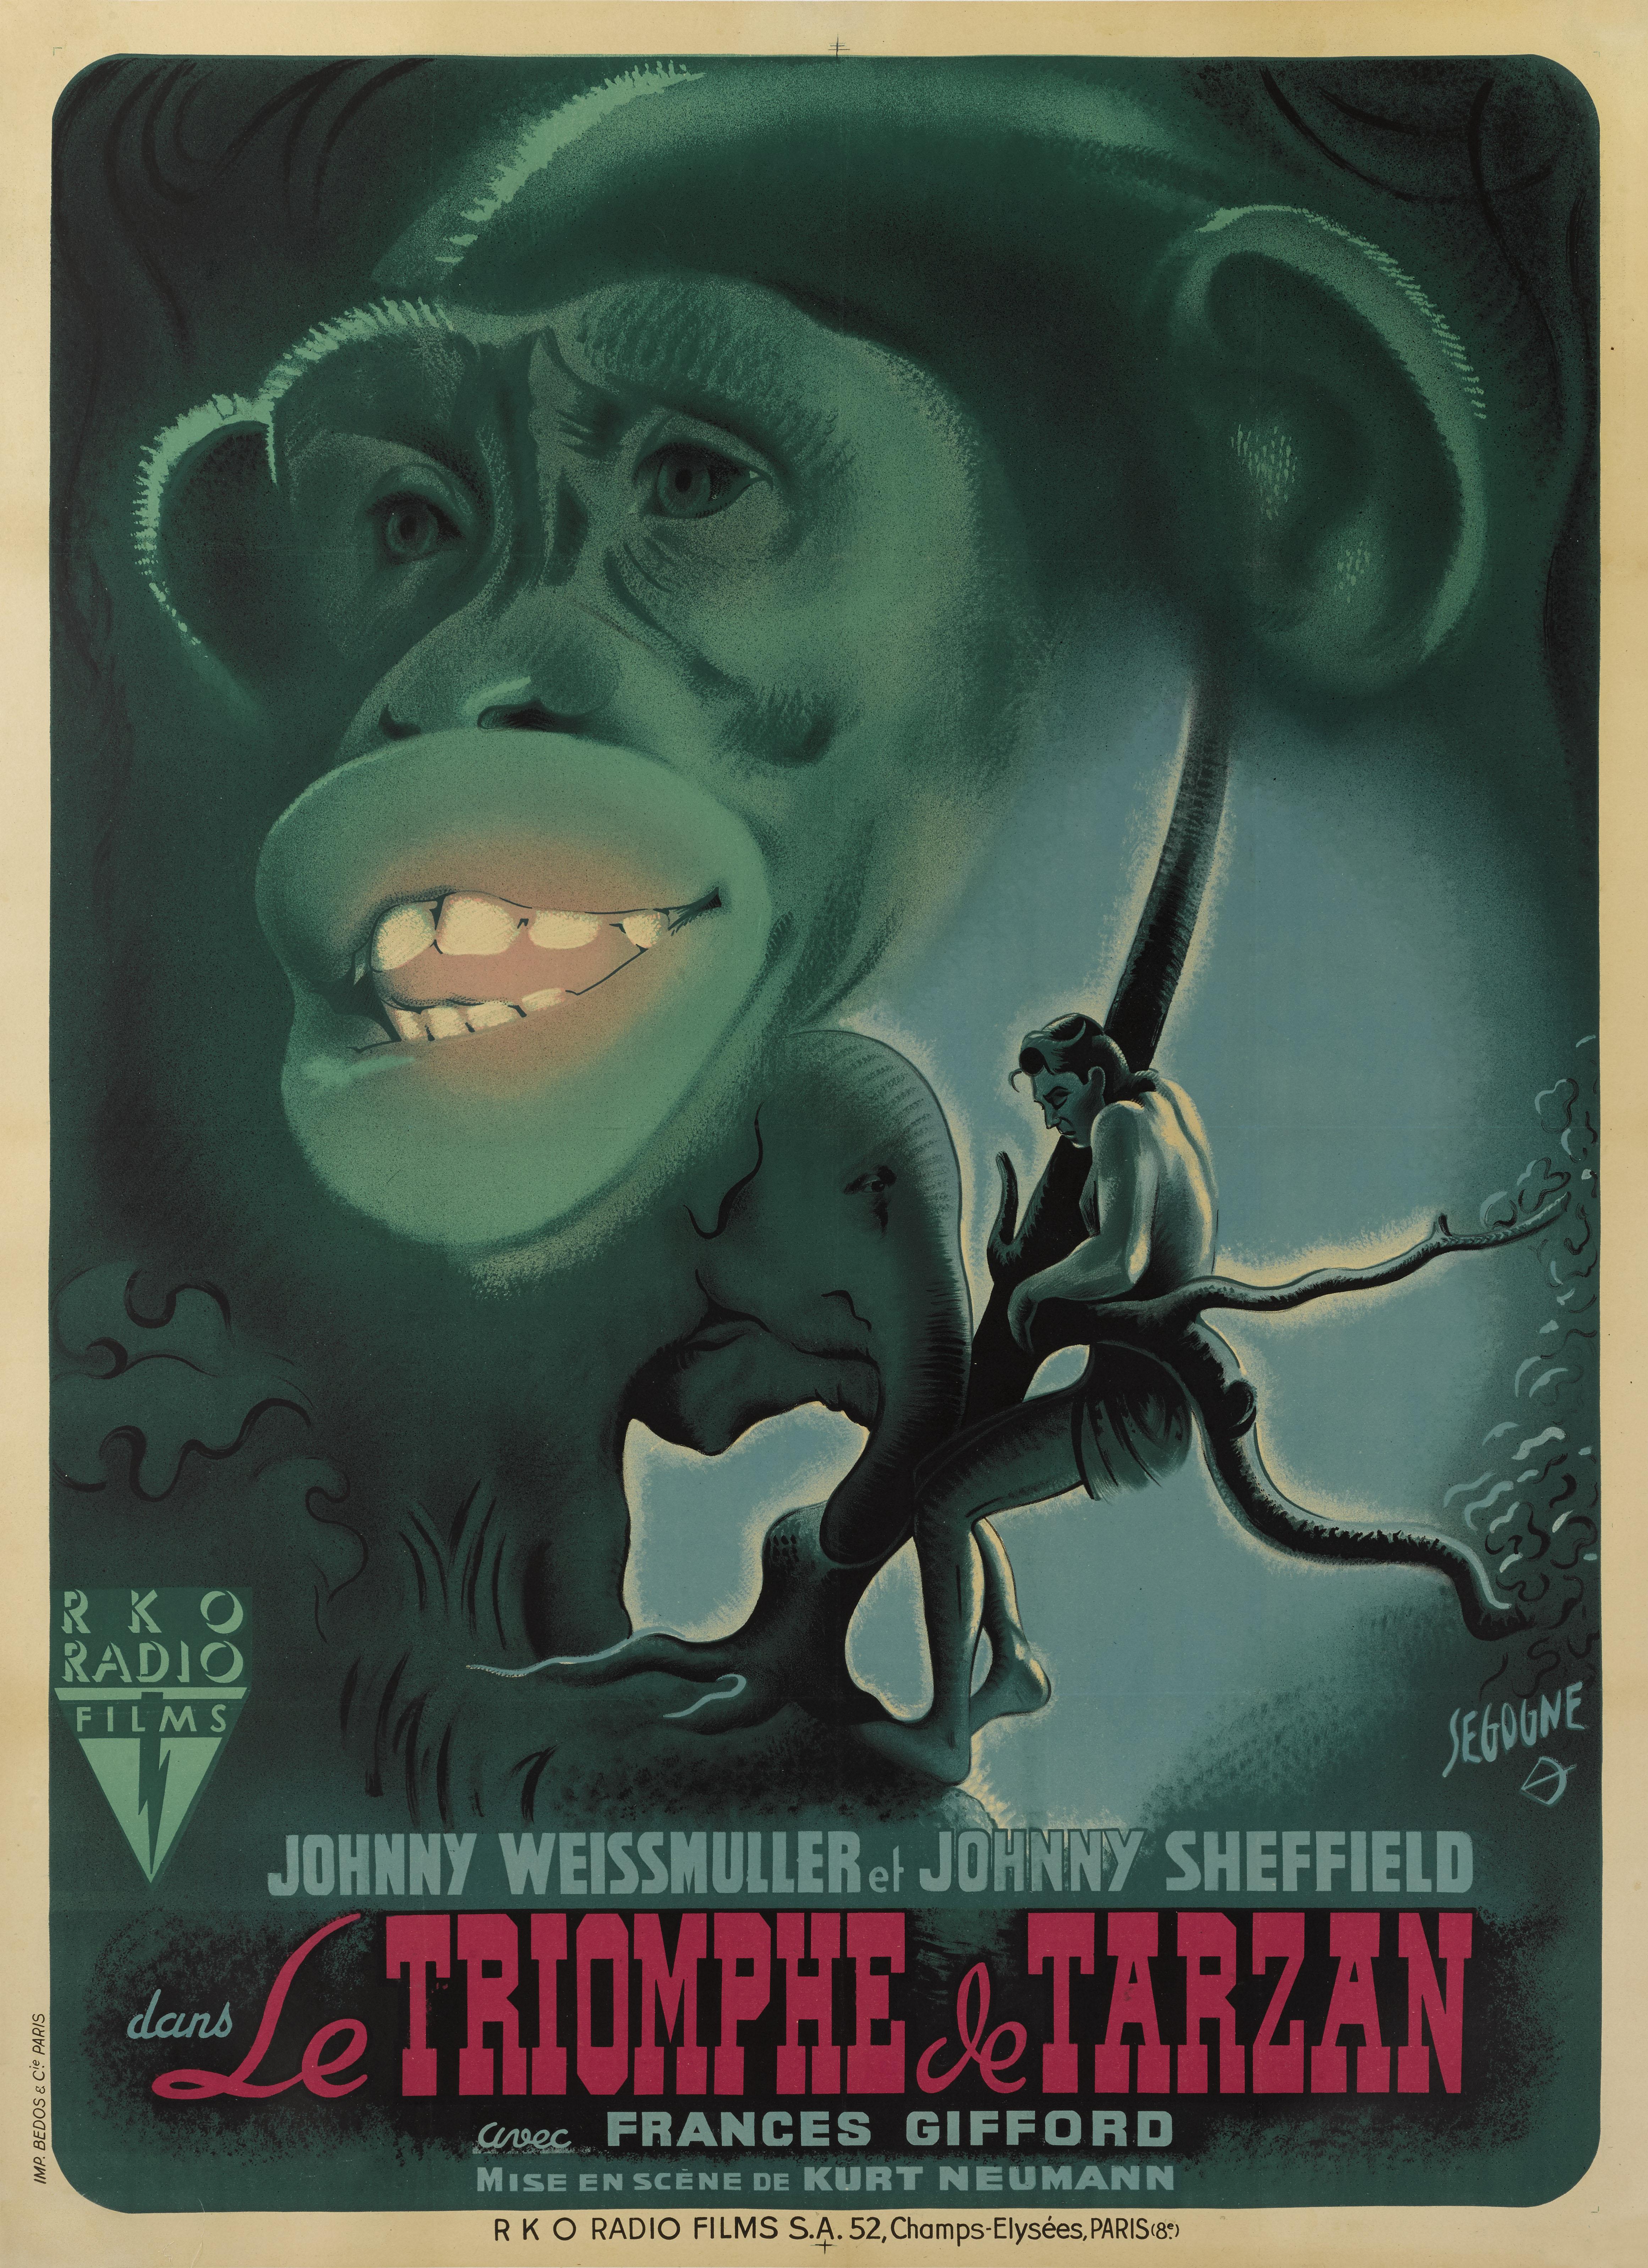 Originales französisches Filmplakat für den Film Tarzan triumphiert von 1943.
Dieser Abenteuerfilm wurde von Wilhelm Thiele inszeniert und basiert auf den von Edgar Rice Burroughs geschaffenen Figuren. Johnny Weissmuller spielt Tarzan, der gegen